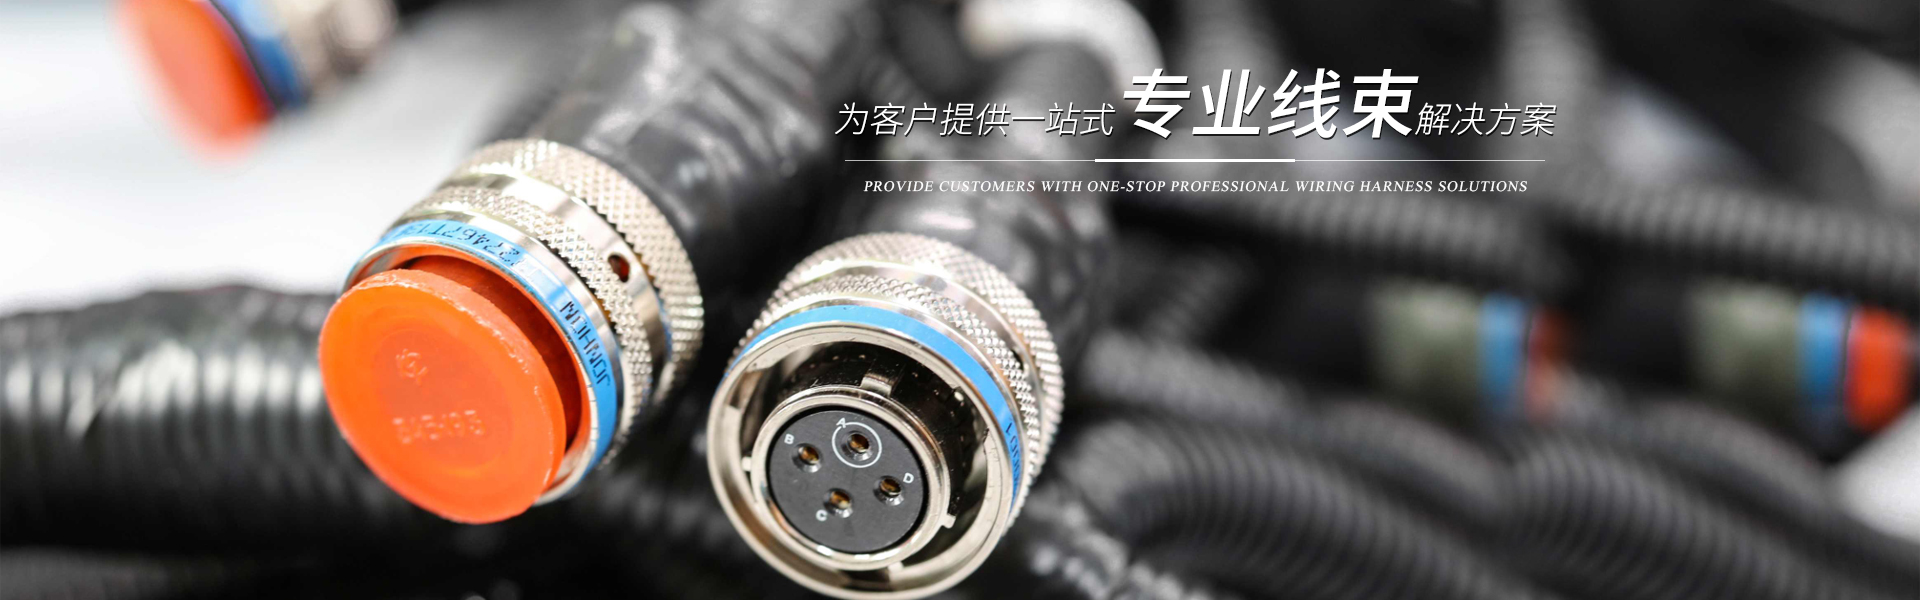 长沙友宝电气装备有限公司_长沙线束生产销售研发